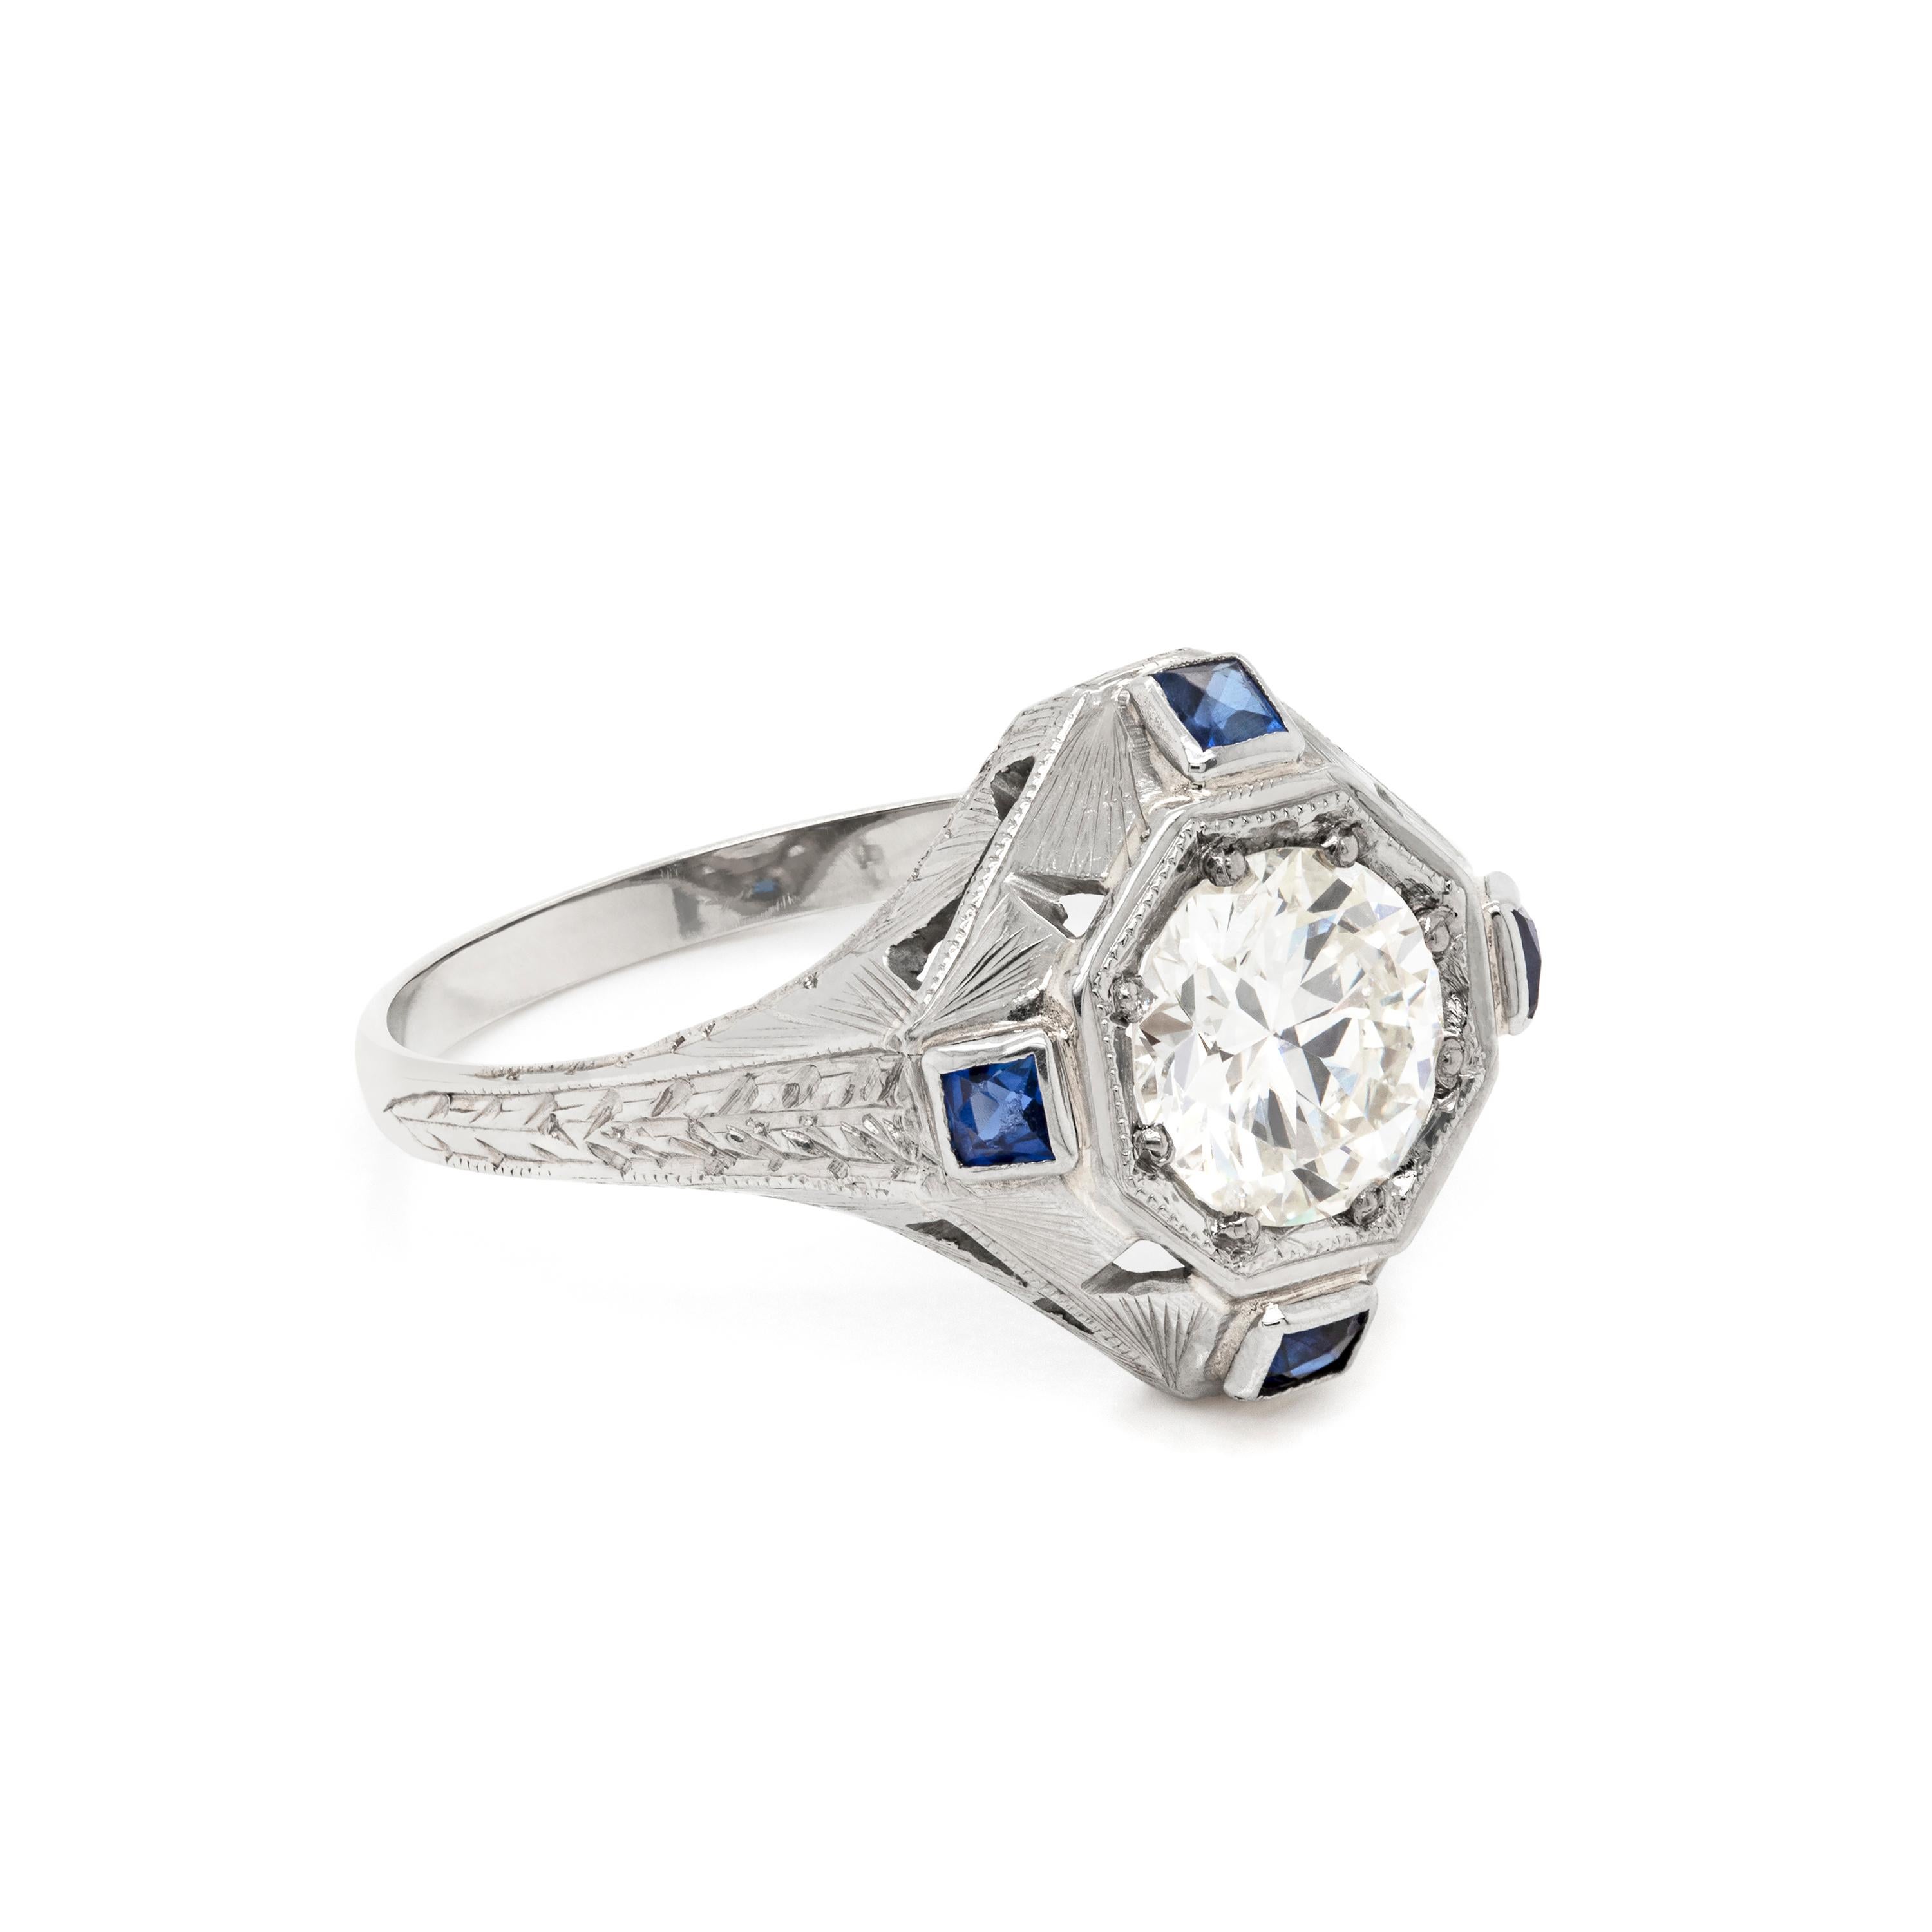 Dieser handgefertigte Verlobungsring im Art-Déco-Stil der 1930er Jahre enthält einen Diamanten im Übergangsschliff von 1,14 Karat, der in eine quadratische Zielfassung eingefasst ist. Der Diamant wird wunderschön von vier quadratischen synthetischen